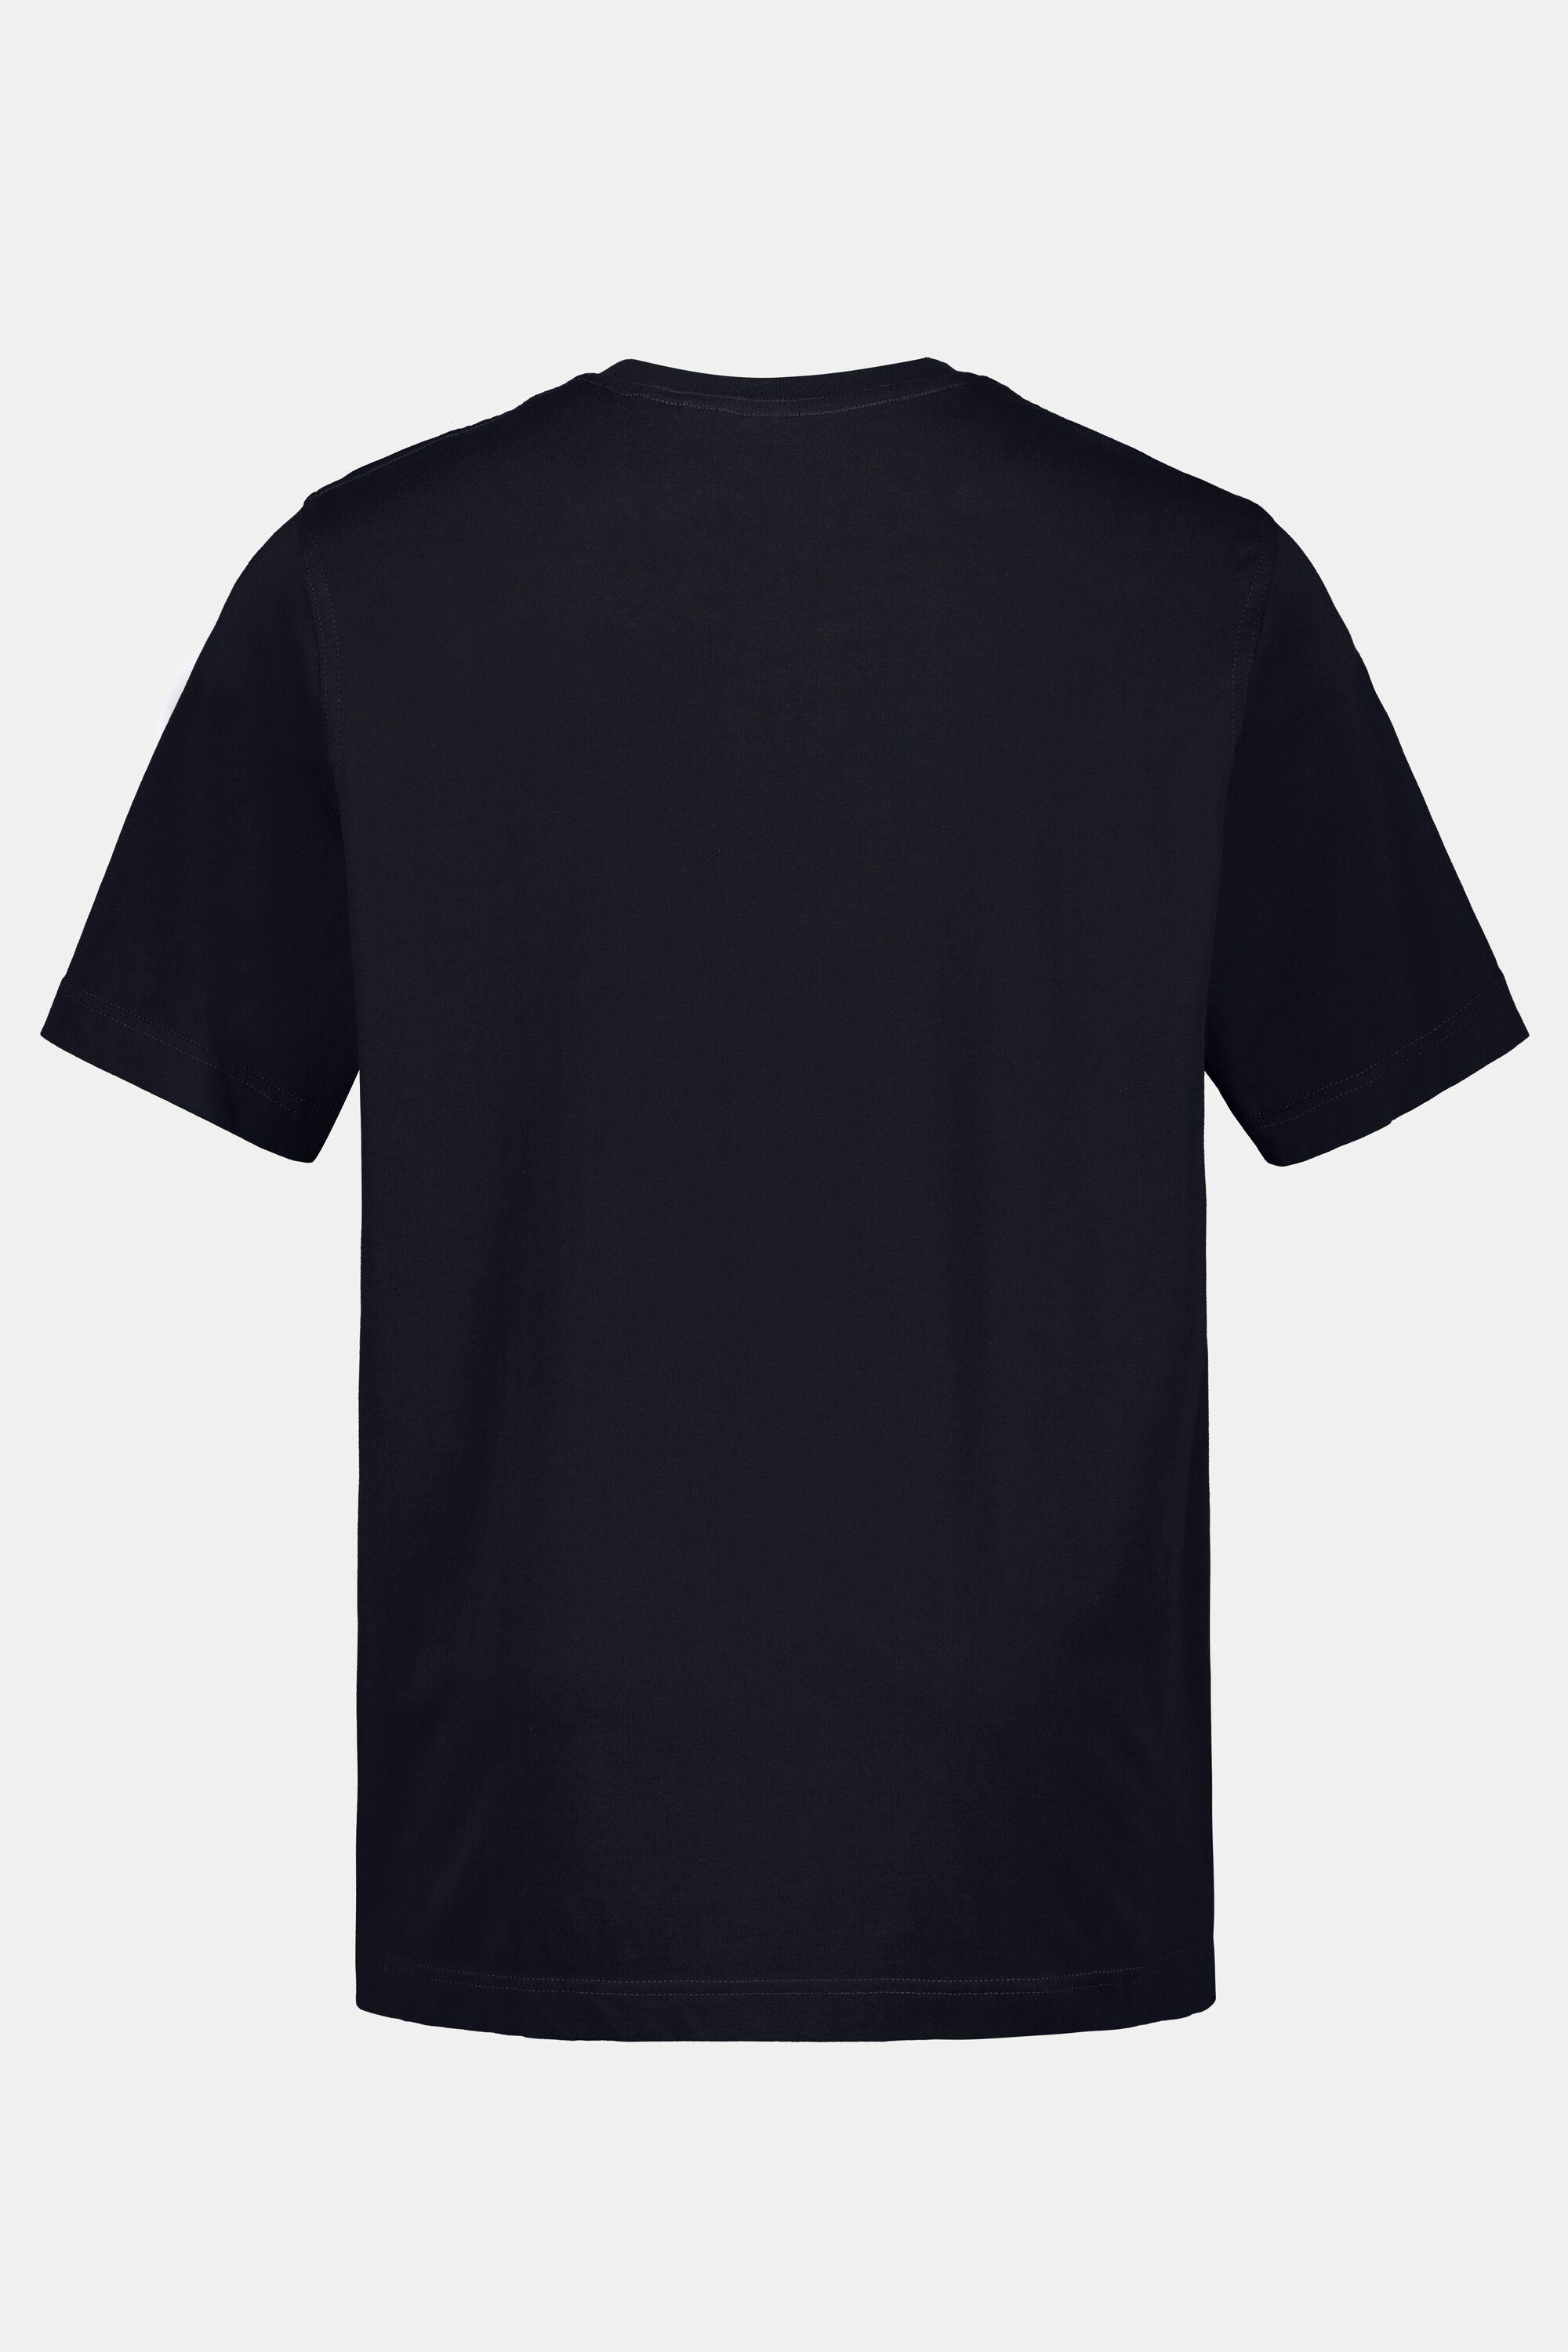 JP1880 T-Shirt T-Shirt 8XL Rundhals dunkel gekämmte marine Basic bis Baumwolle